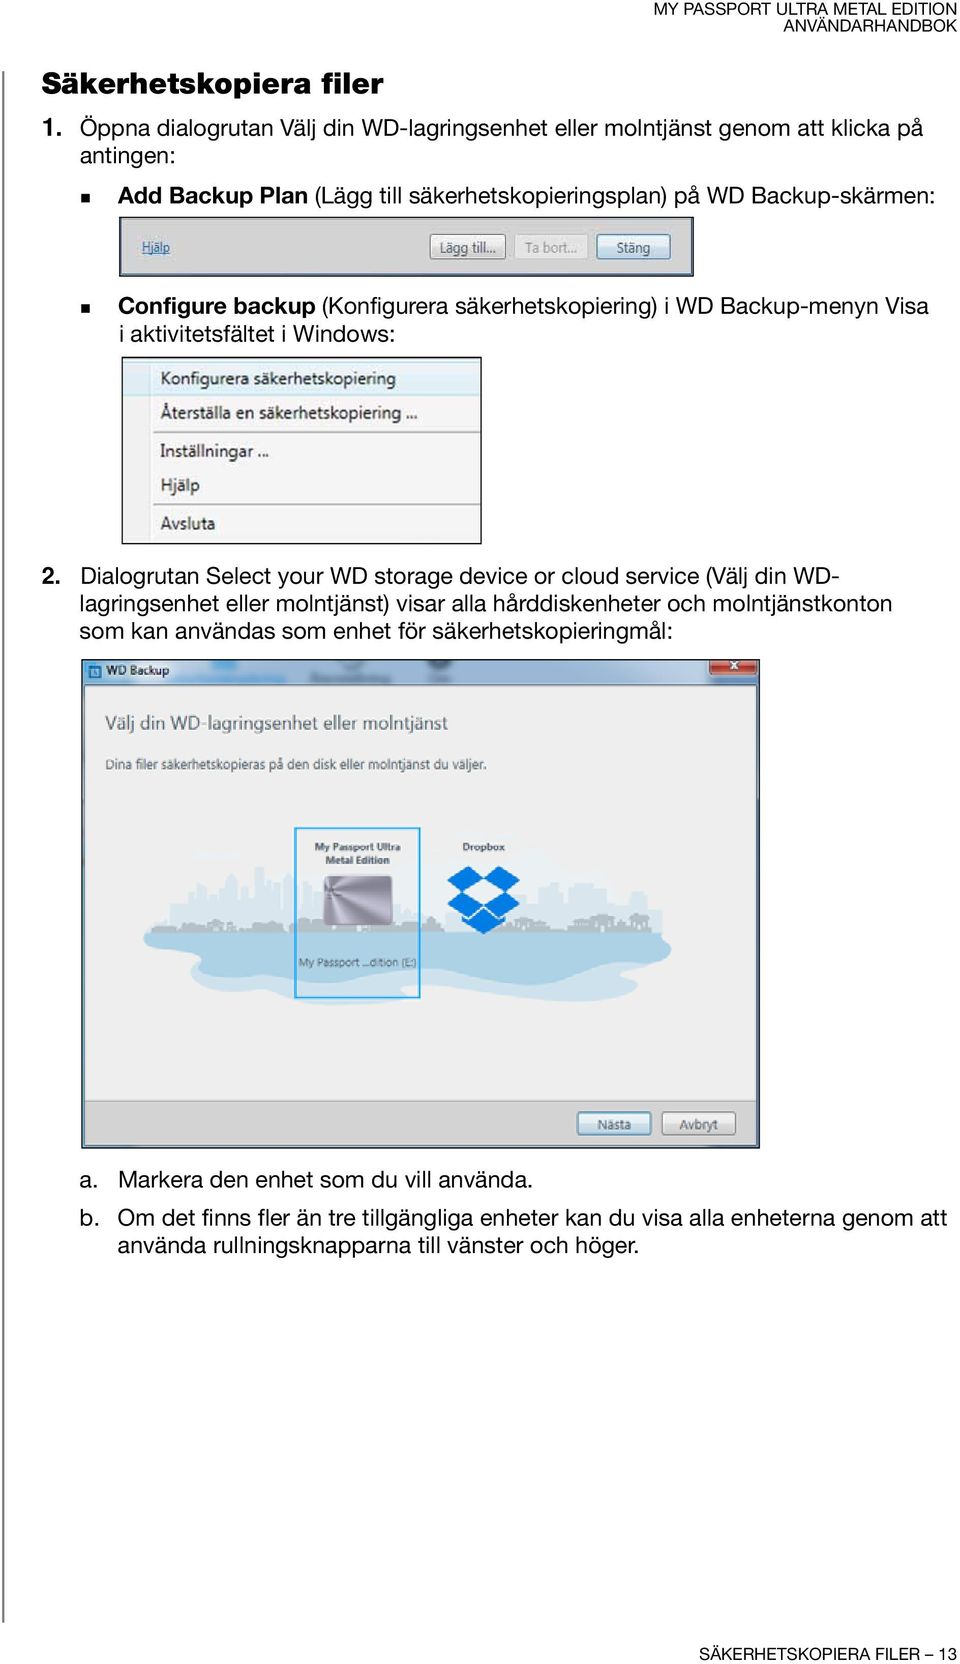 (Konfigurera säkerhetskopiering) i WD Backup-menyn Visa i aktivitetsfältet i Windows: 2.